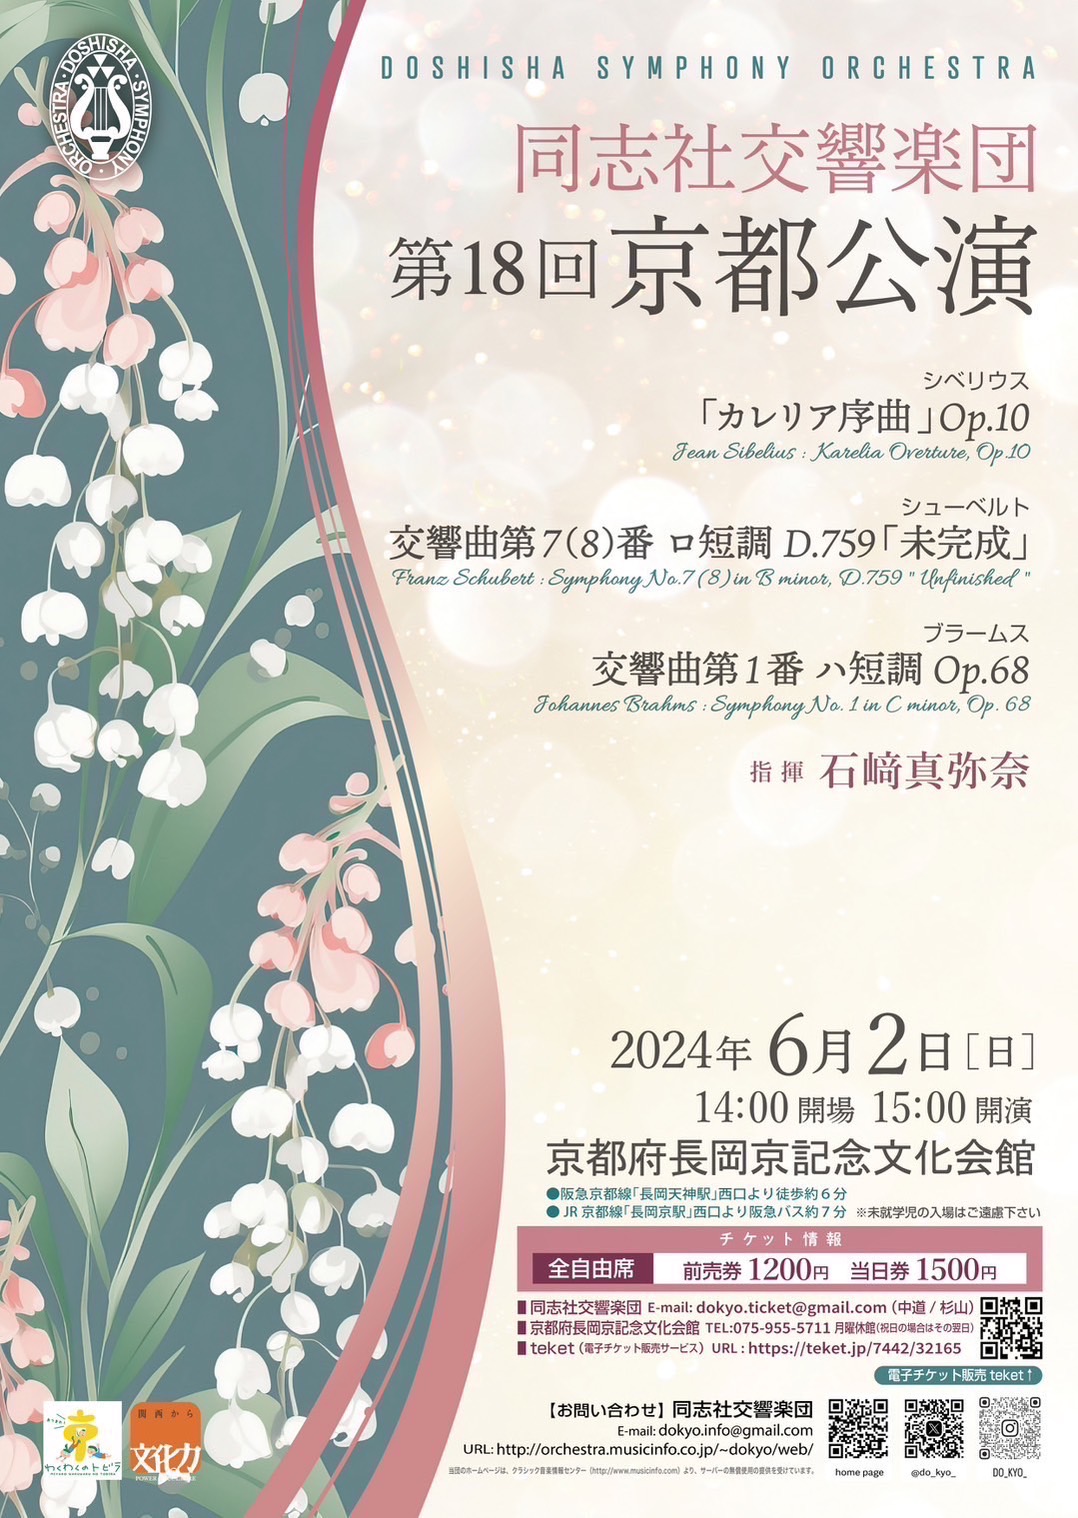 同志社交響楽団同志社交響楽団 第18回京都公演のフライヤー画像